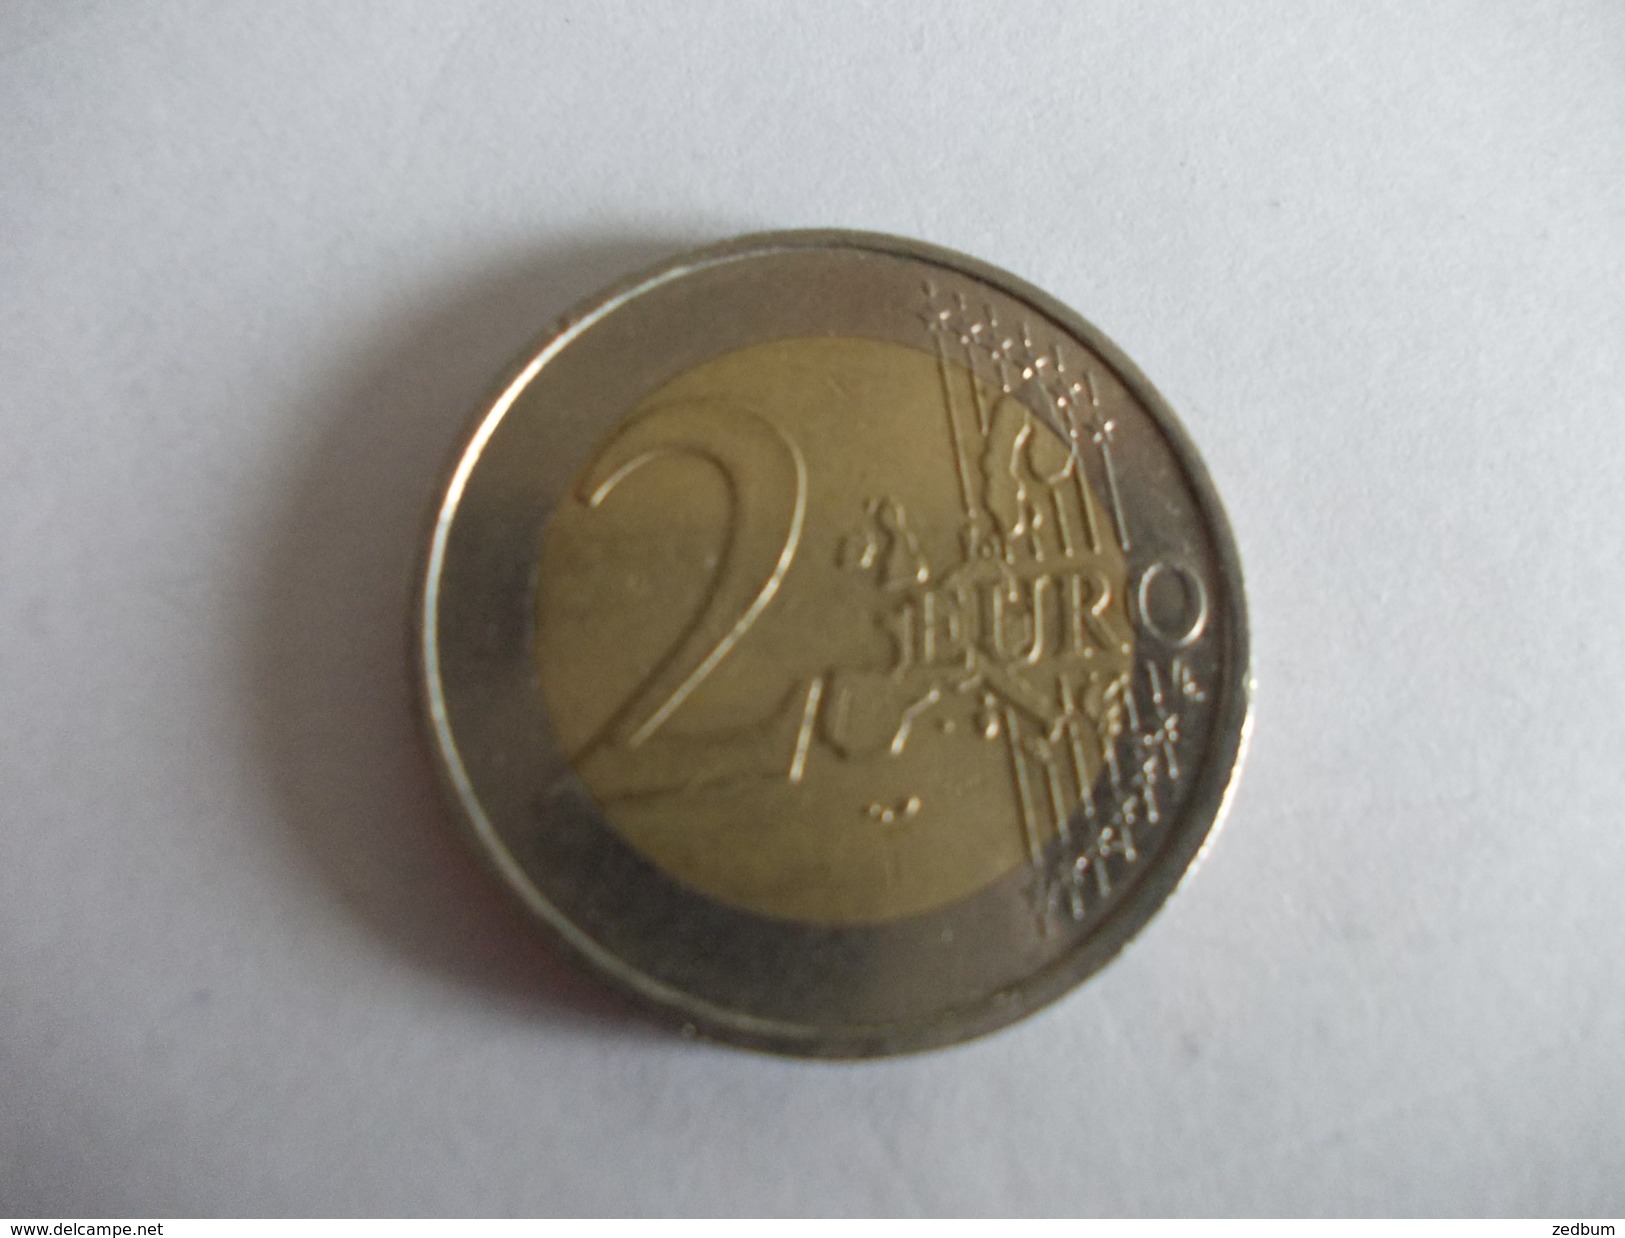 Monnaie Pièce De 2 Euros De Allemagne Année 2002 Valeur Argus 3 &euro; - Allemagne